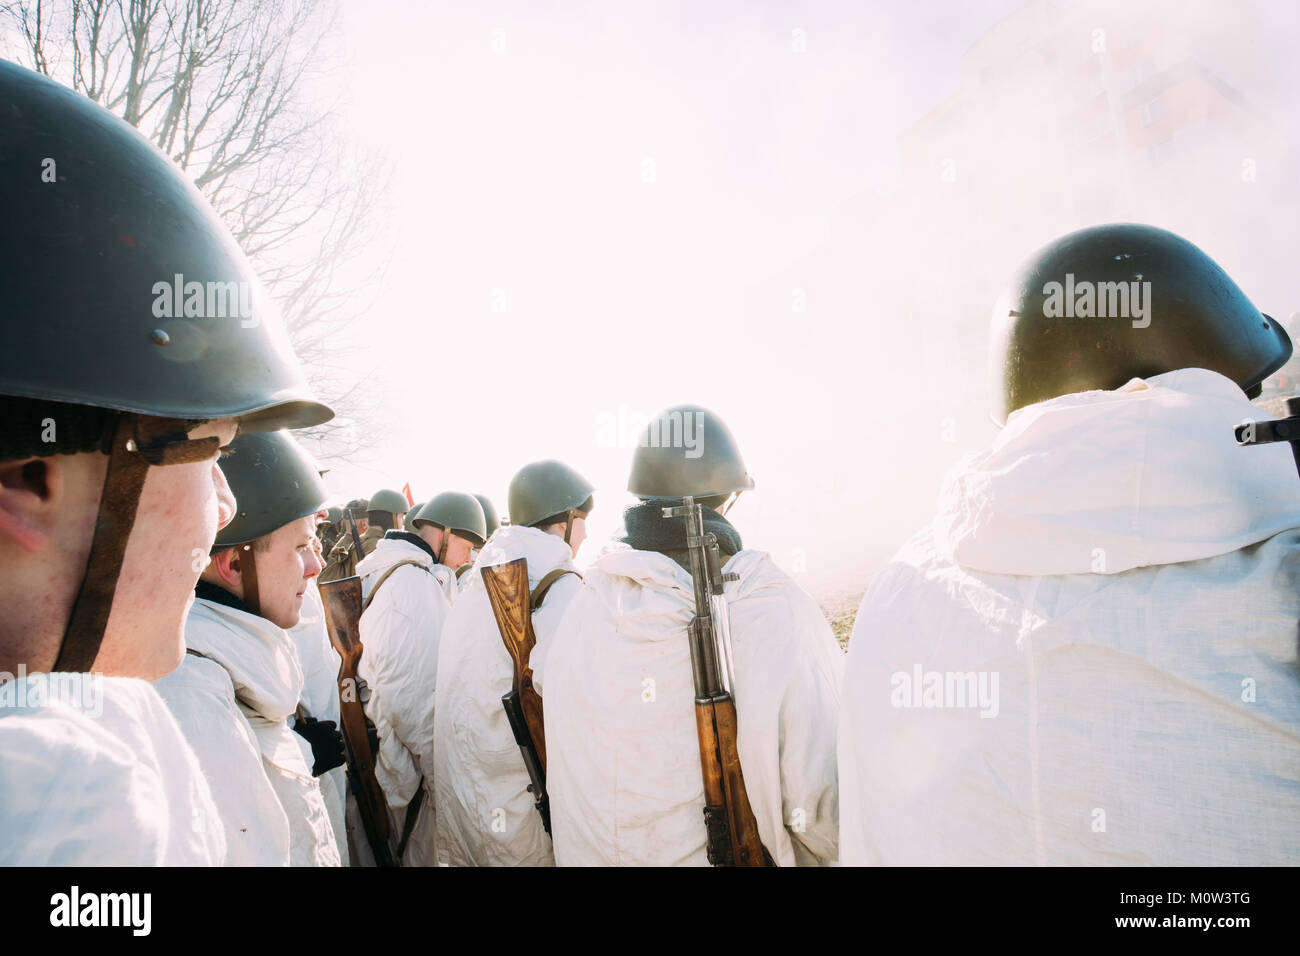 Rogachev, Bielorussia - Febbraio 25, 2017: Re-enactors vestito come Soviet russo soldati di fanteria della II Guerra Mondiale in piedi in fila. Persone vestite Whit Foto Stock